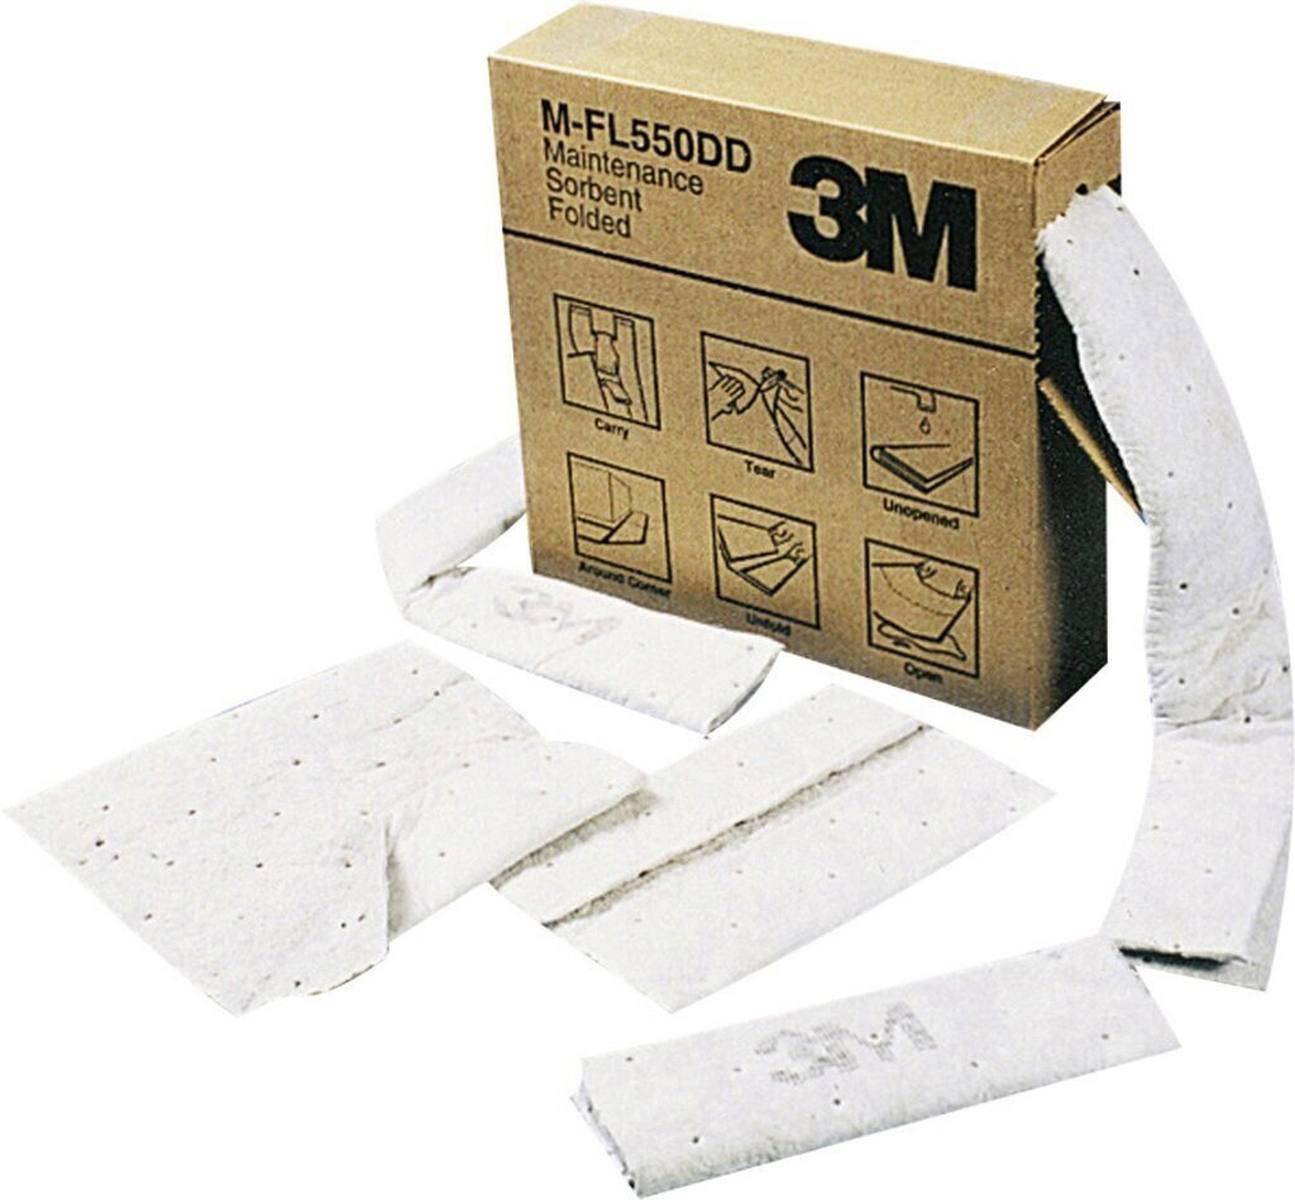 3M MF2001 Industrial binding fleece, 12cmx15.2m (1 pack = 3 pieces), capacity/piece: 40 liters